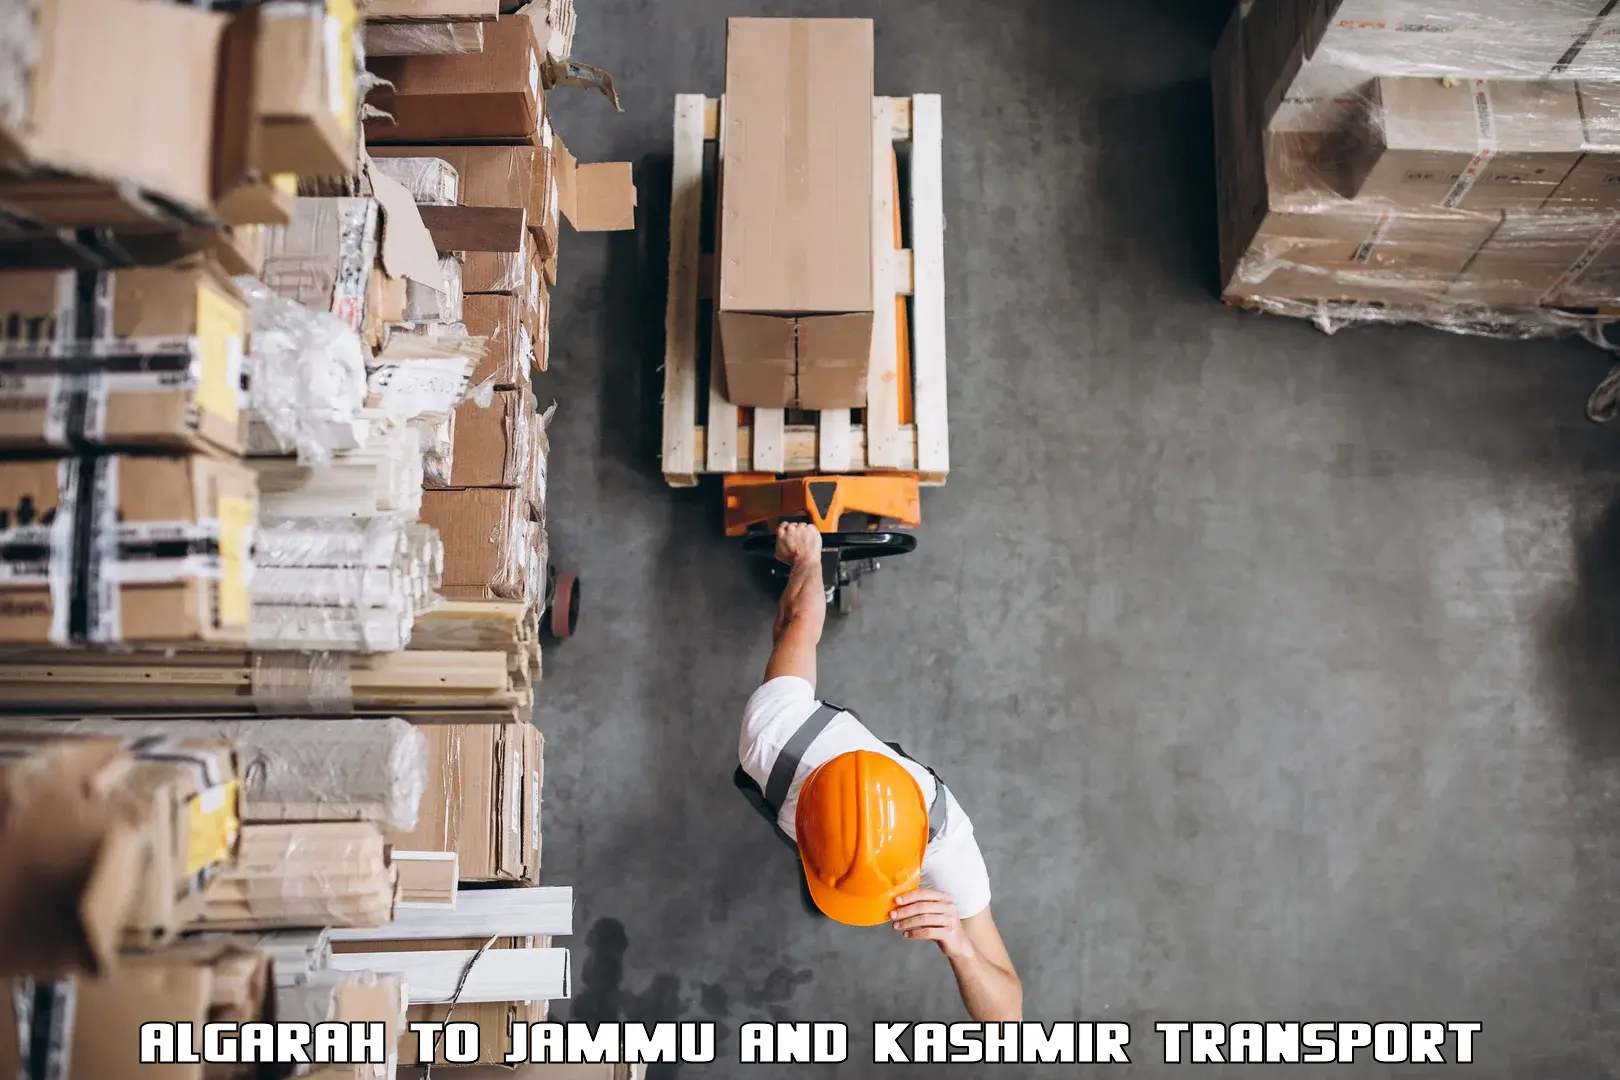 Luggage transport services Algarah to Jammu